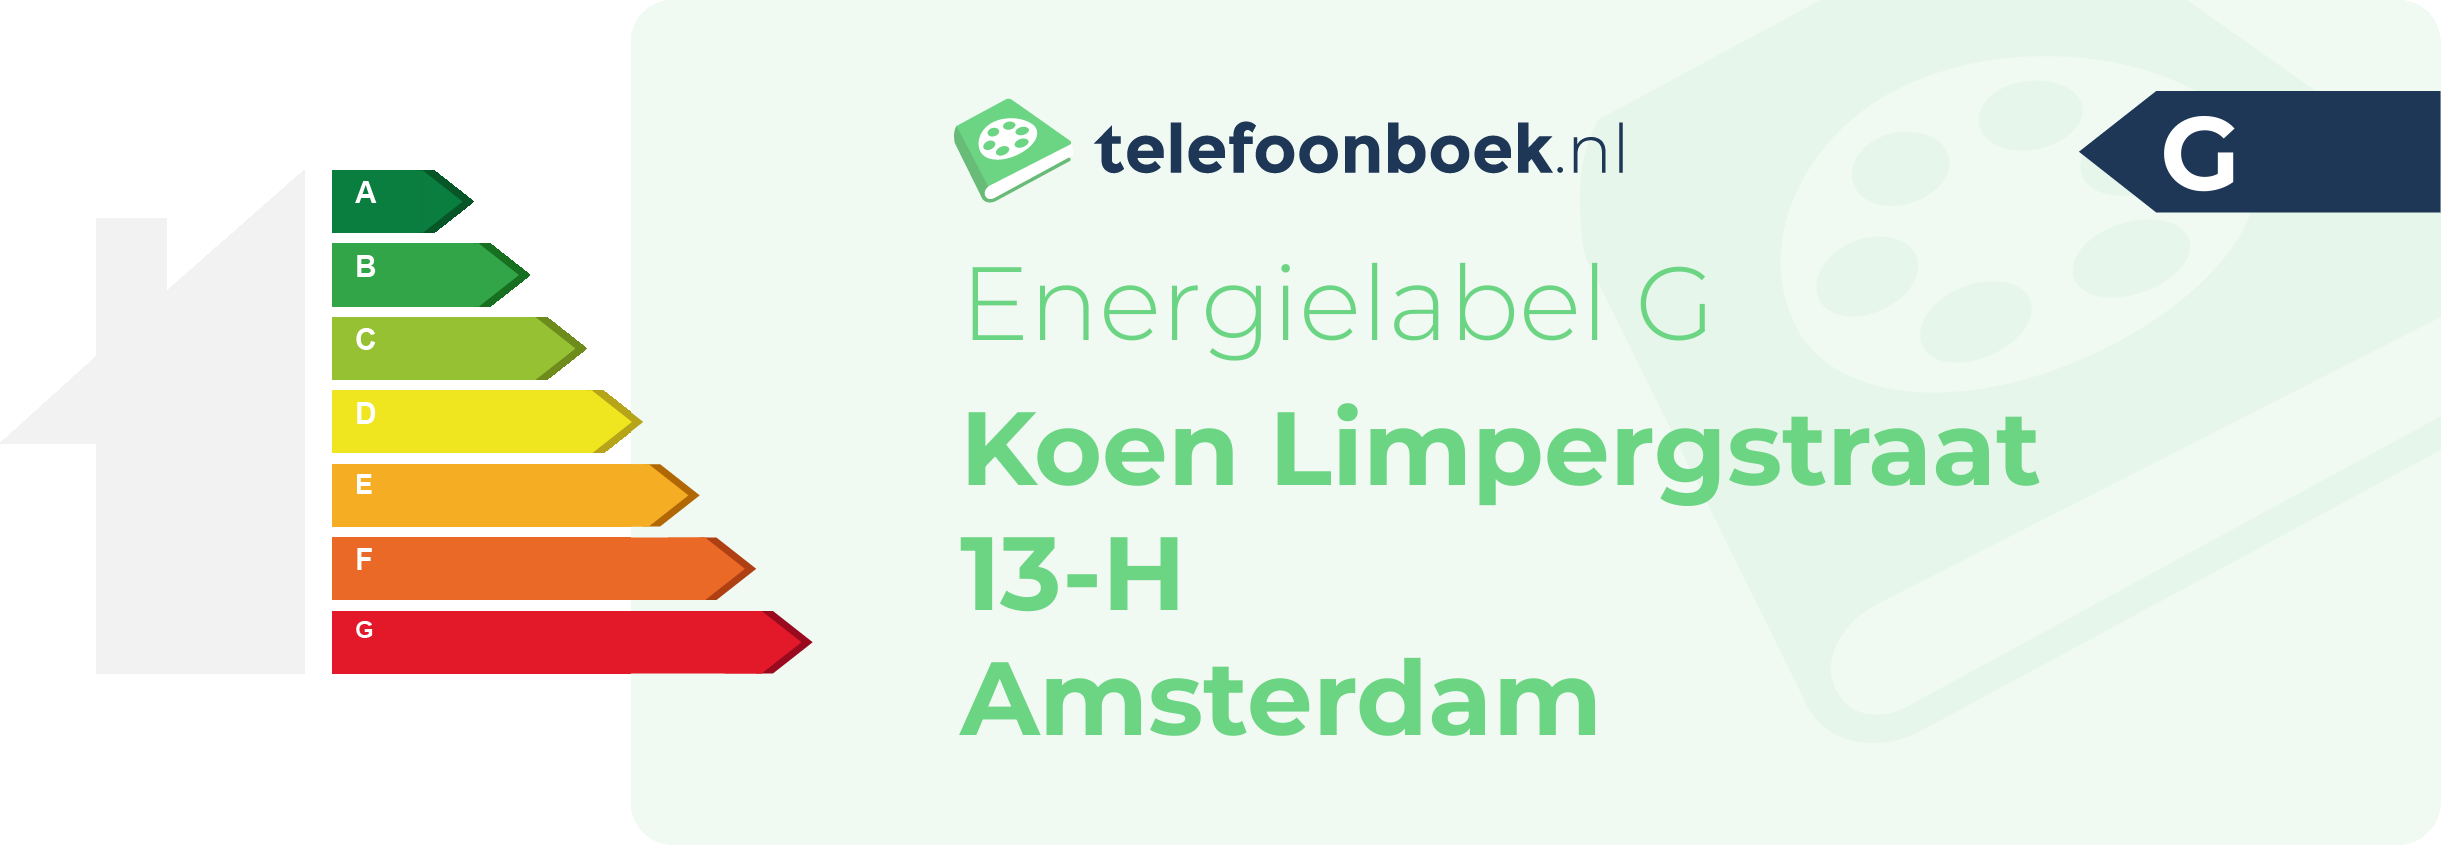 Energielabel Koen Limpergstraat 13-H Amsterdam